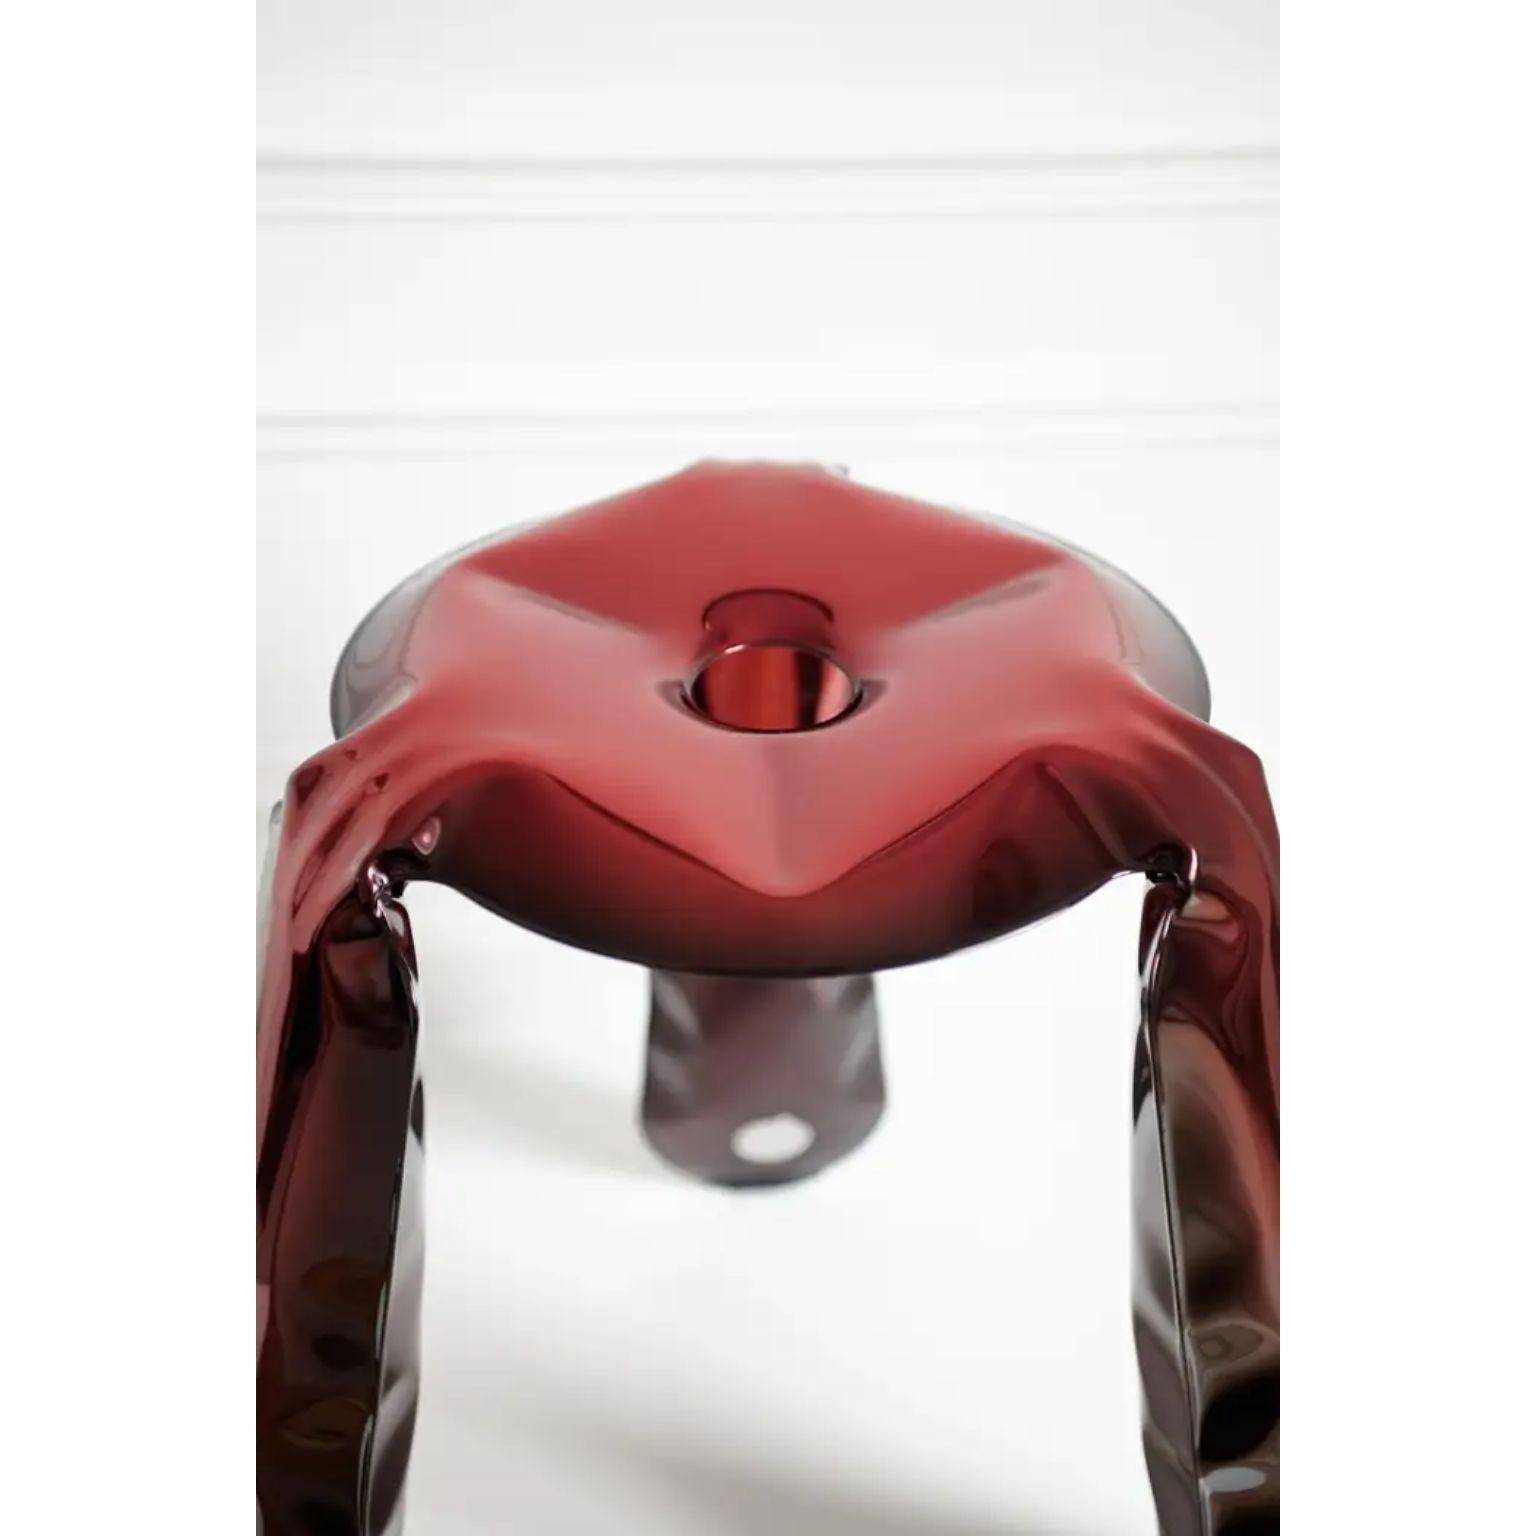 Tabouret Plopp rouge standard Rubin de Zieta
Dimensions : Ø 35 x H 50 cm : Ø 35 x H 50 cm.
Matériaux : Acier inoxydable.
Finition : Rouge rubis.

Disponible en différentes couleurs et finitions. Disponible en acier inoxydable, en aluminium et en